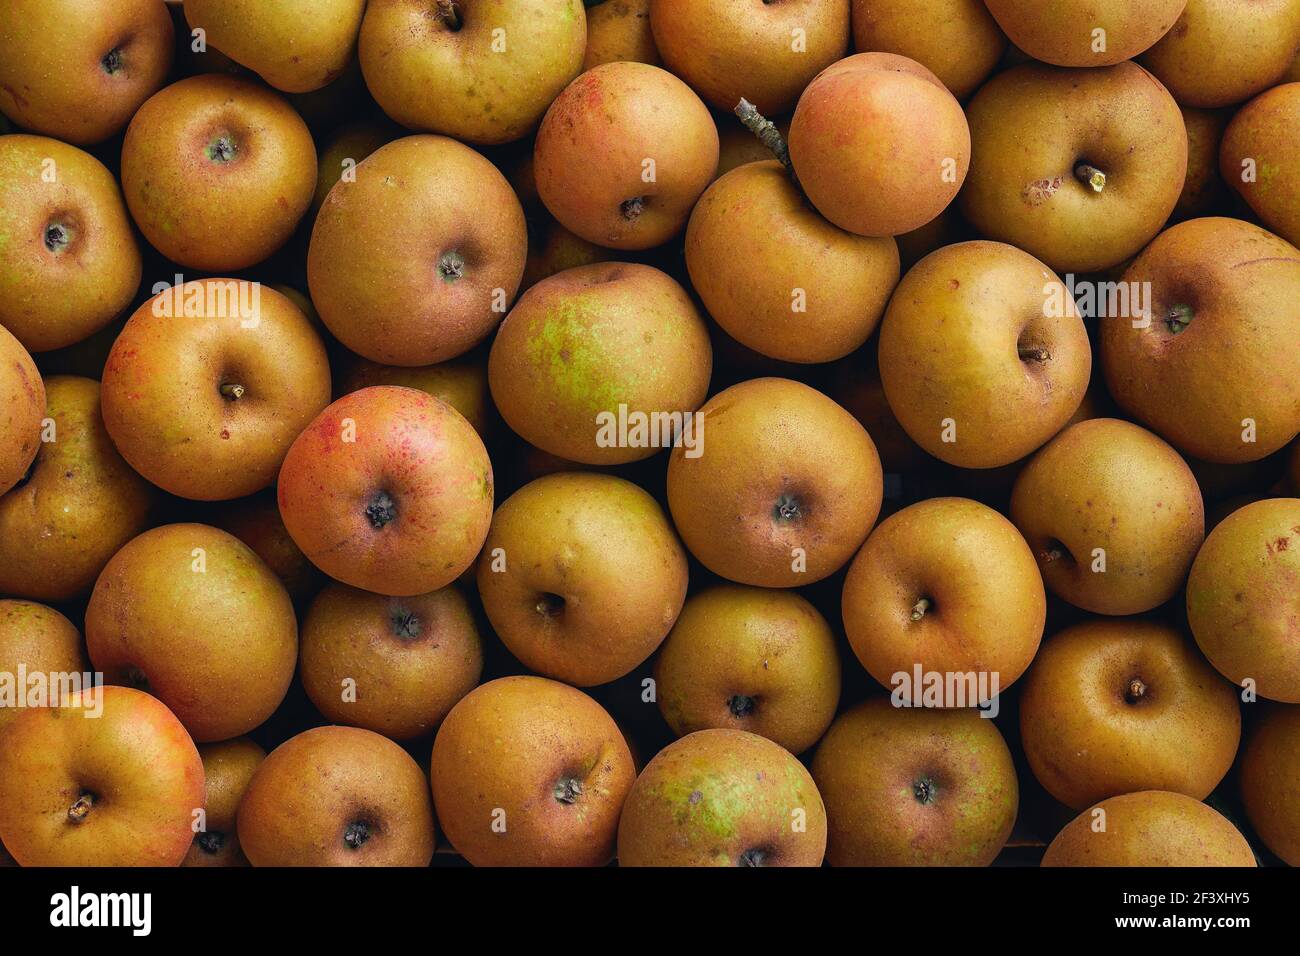 Heirloom reinette mele. Una mela dall'aspetto rustico molto autentica e ricca di sapori. Foto Stock